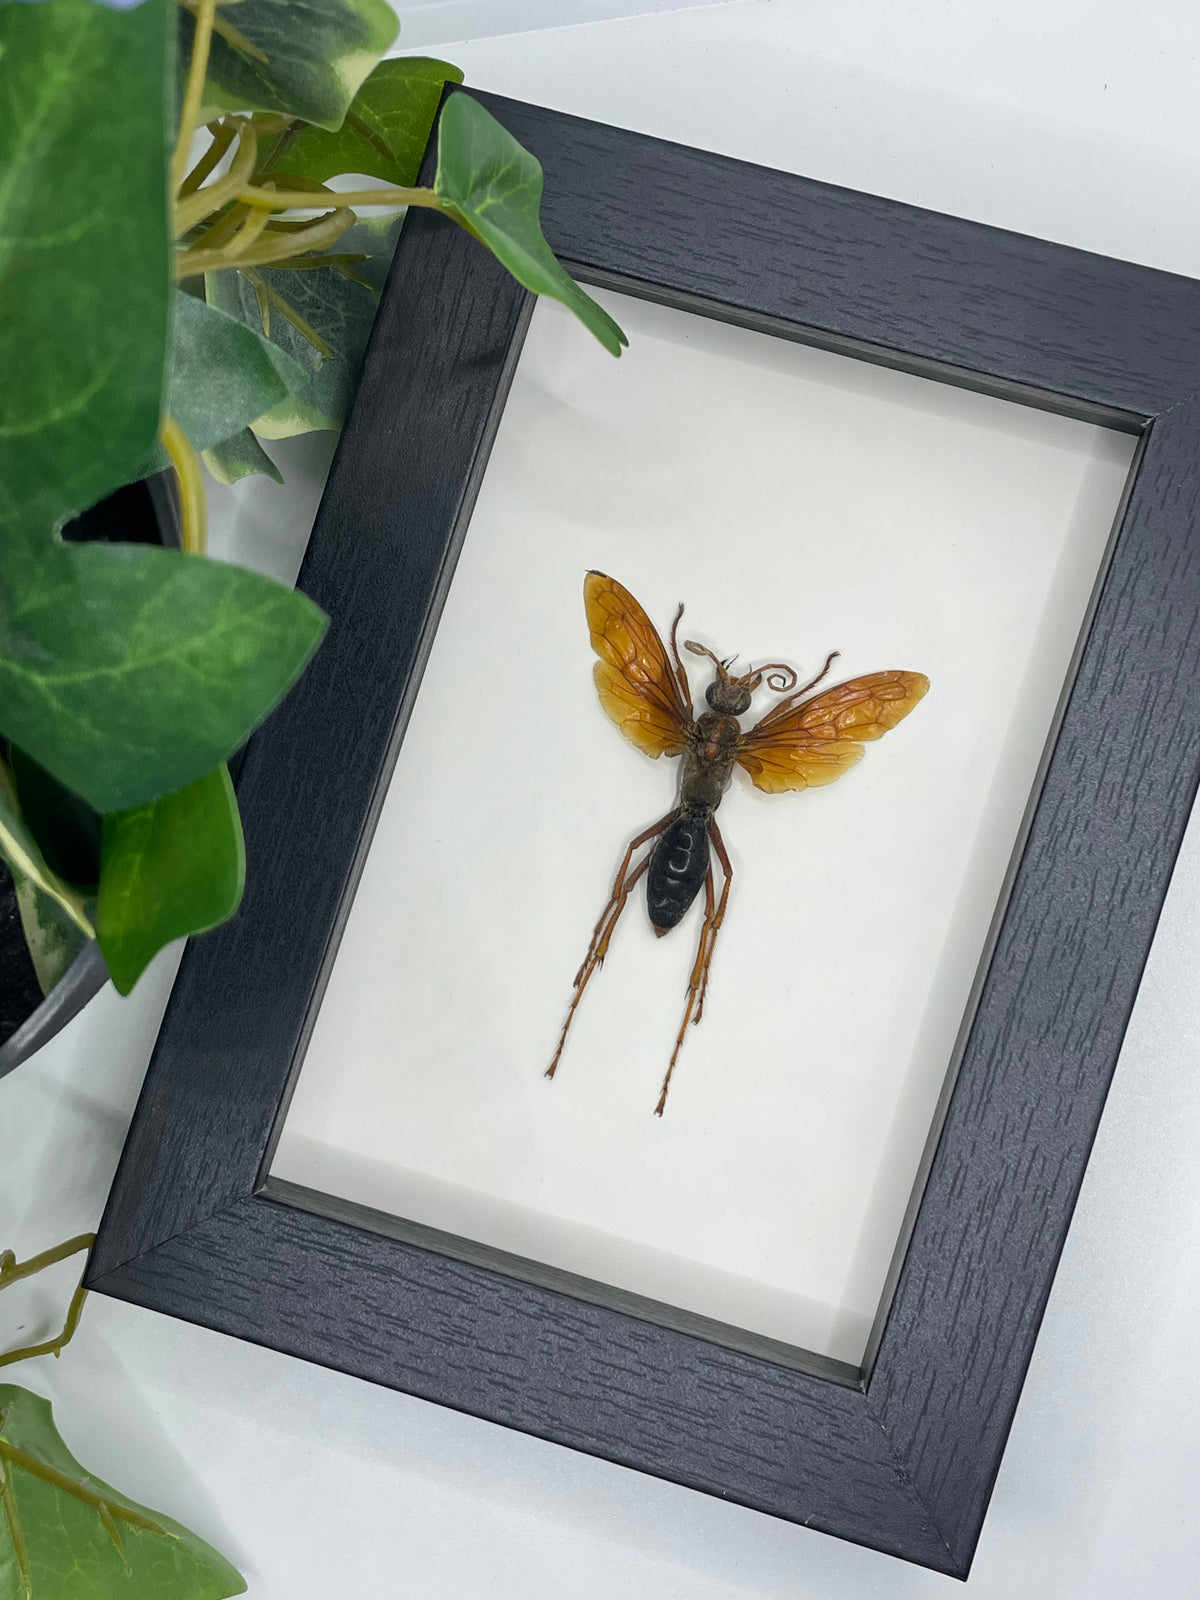 XL Golden Wasp / Batozonellus Annulatus in a frame